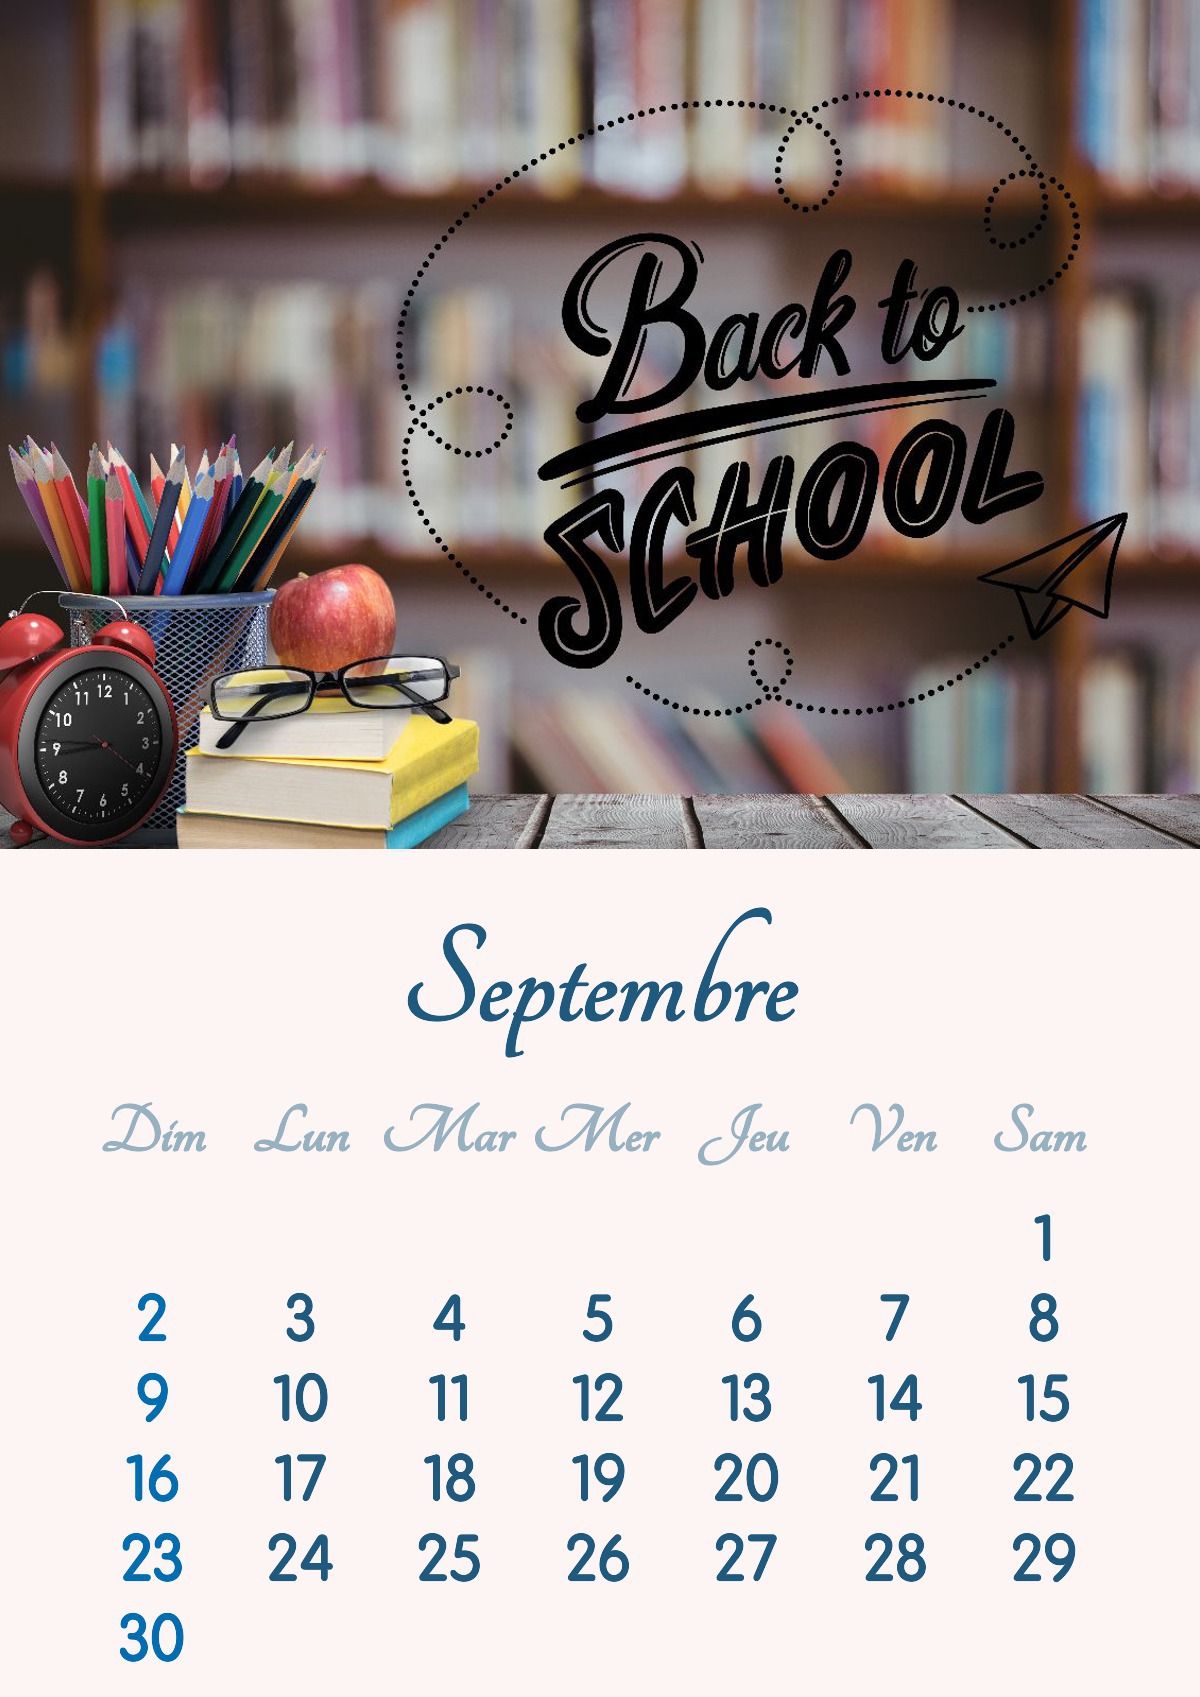 Kalenderen for september 2018 kan udskrives i A4-format Fotomontage